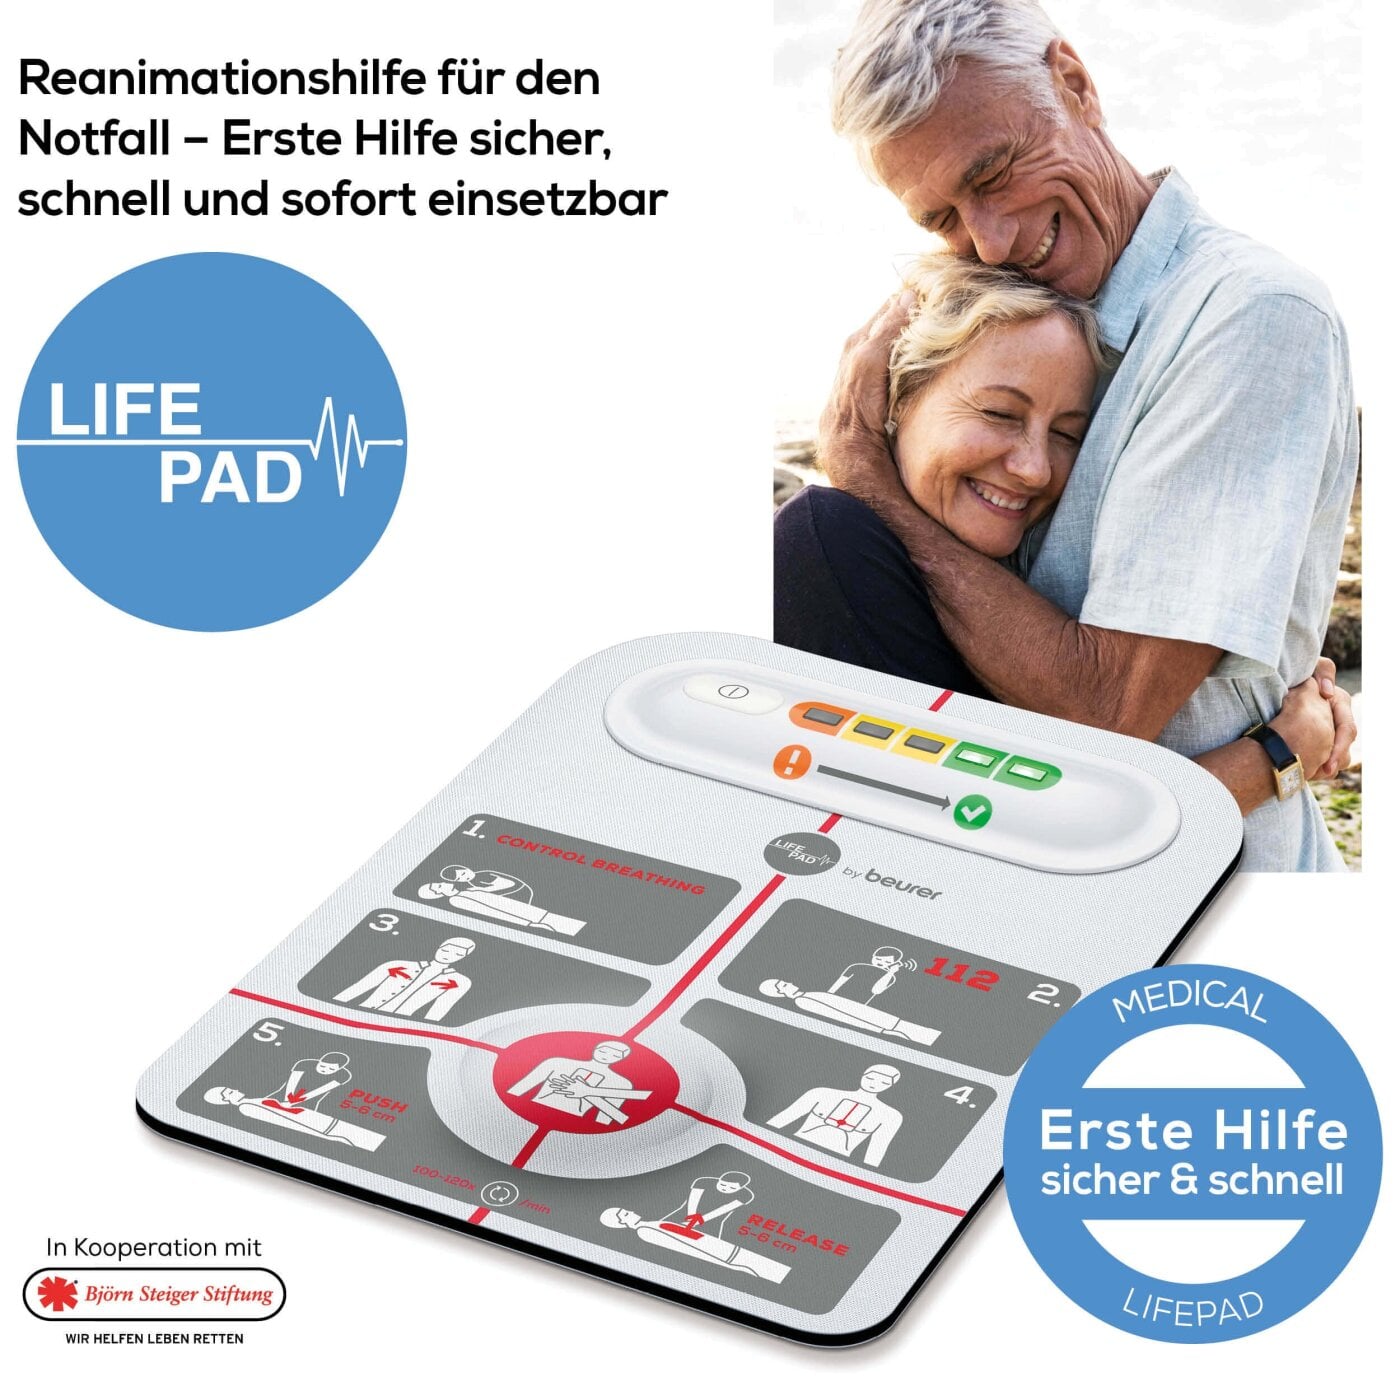 LifePad® - Hilfsprodukt für die Reanimation